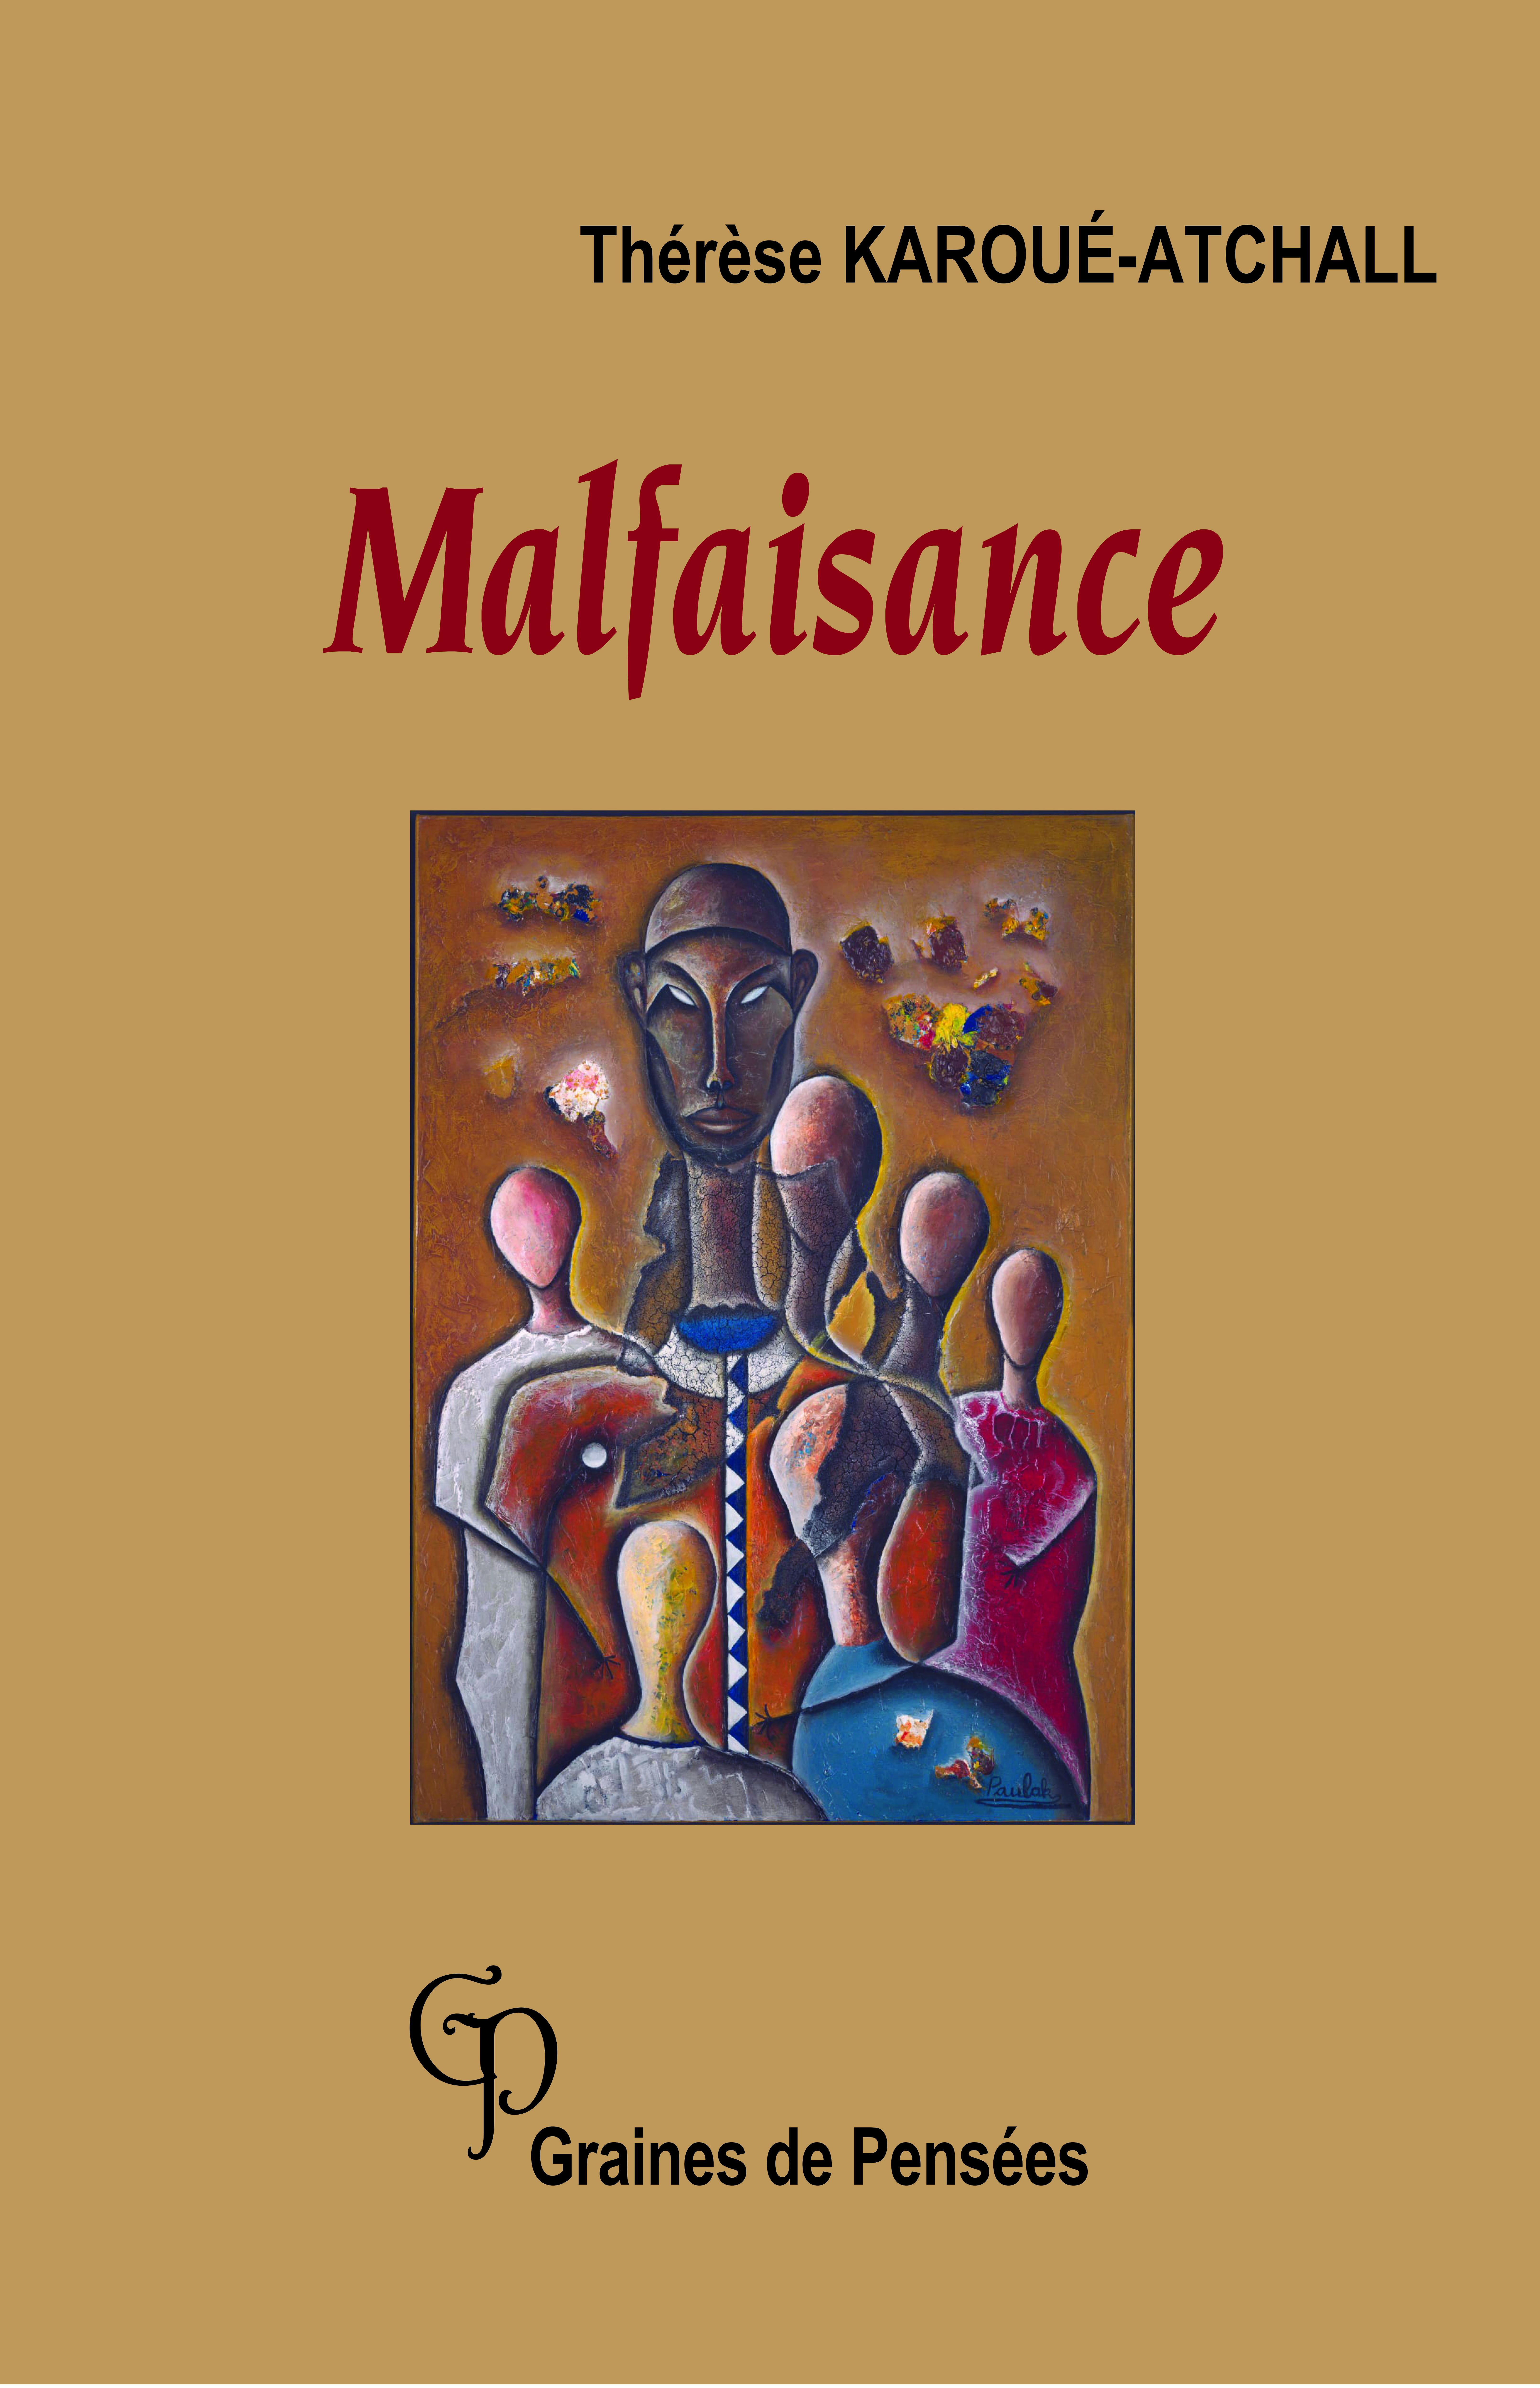 Article : Littérature togolaise :  « Malfaisance », une introspection critique des maux qui rongent nos sociétés